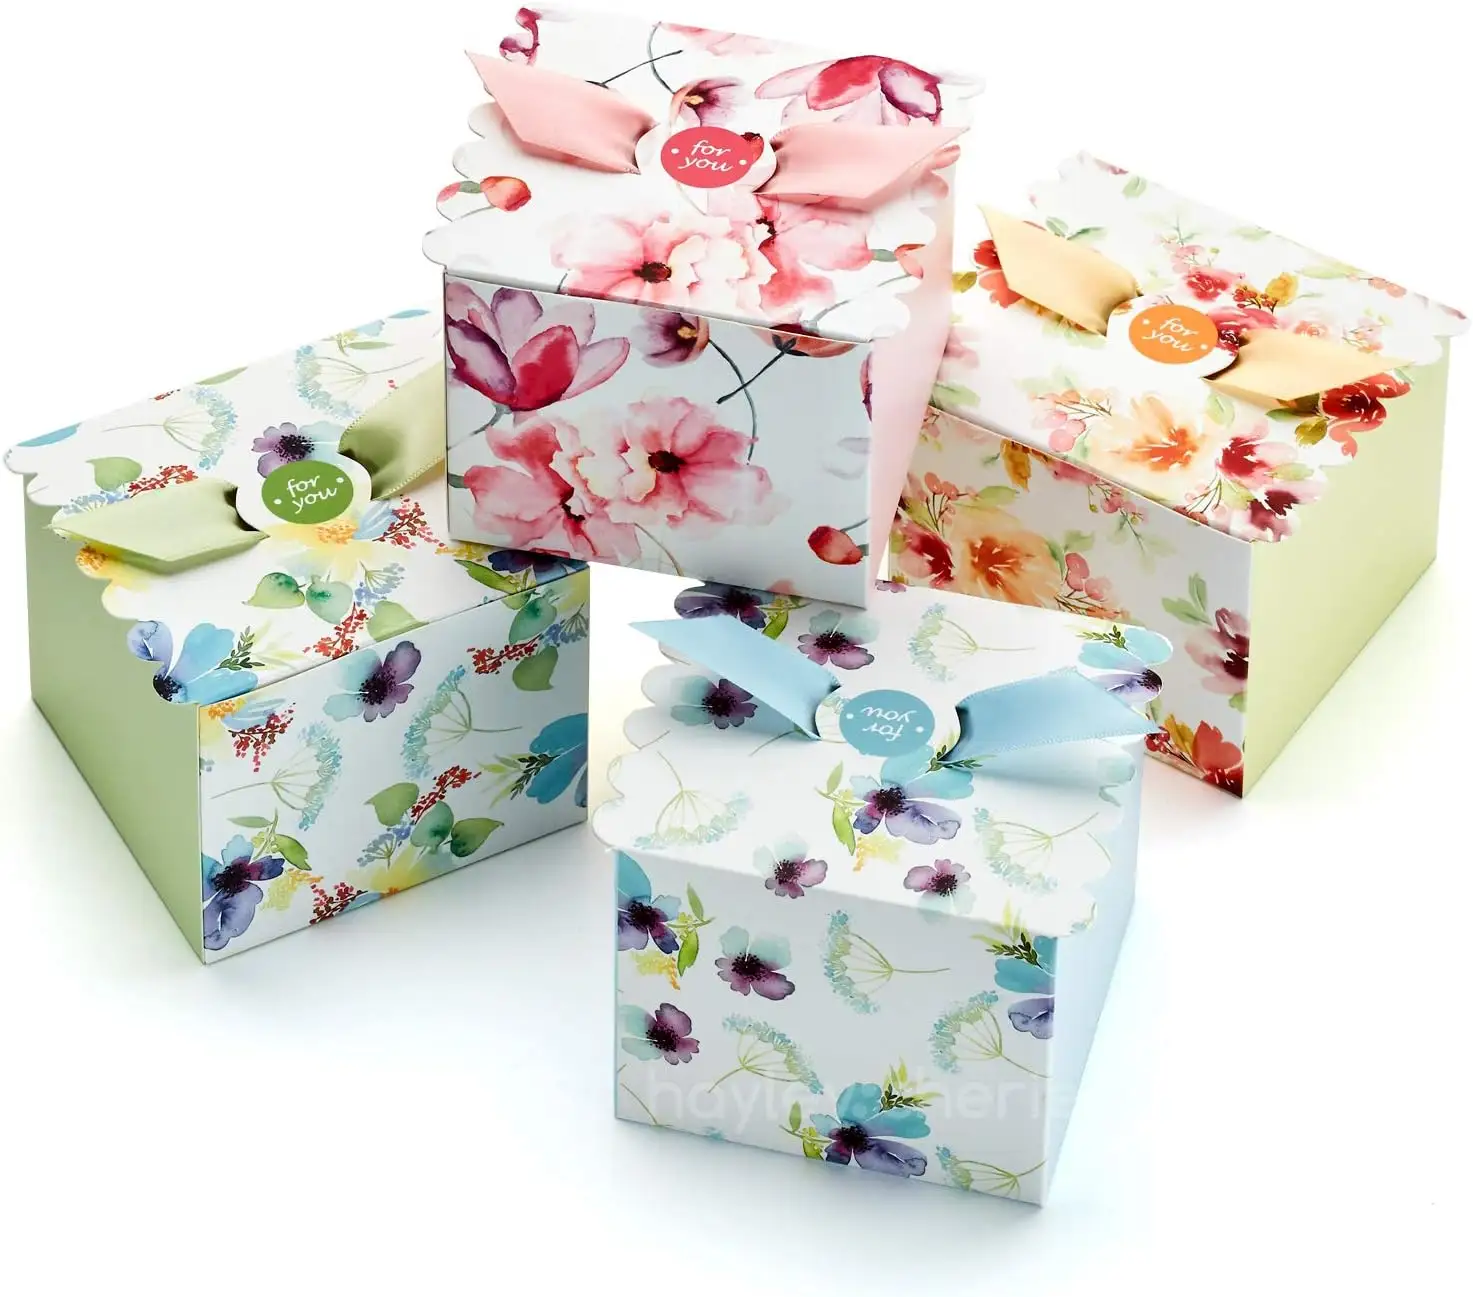 Scatola di cartone Blancas Design Premium piccola scatola di cartone Kraft regalo in oro bianco per scatole di nastro di carta regalo e cioccolato